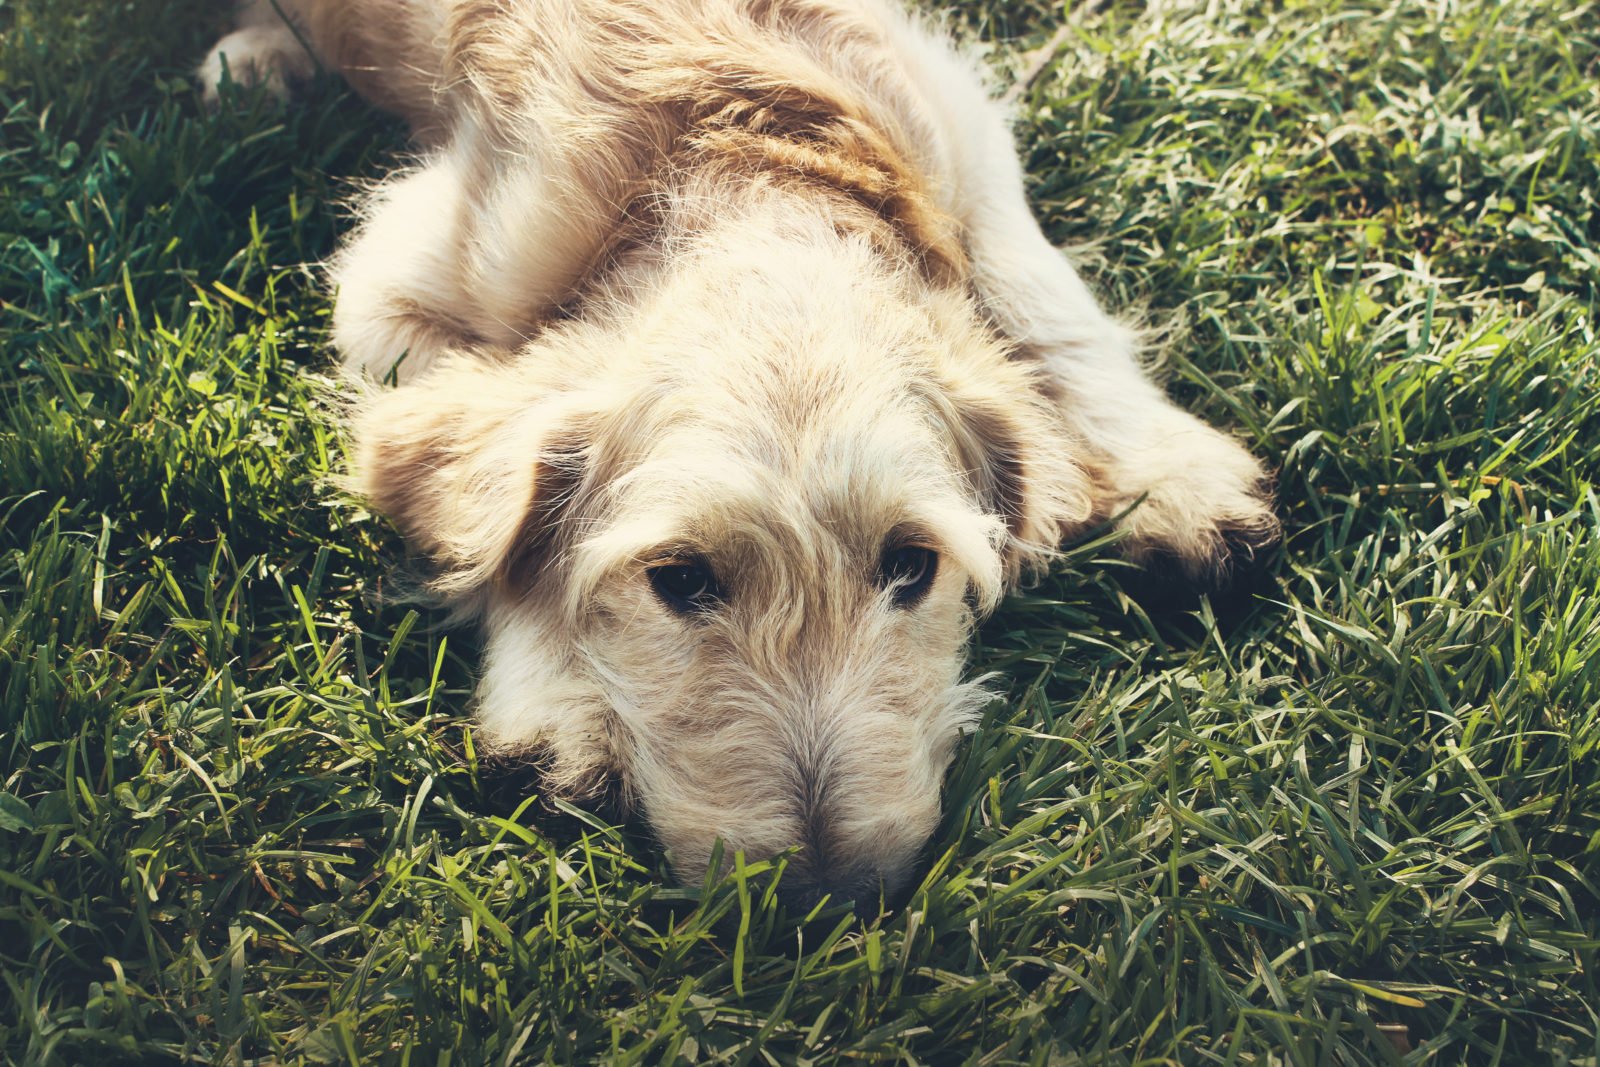 Clavamox para perros: Guía de usos, beneficios y efectos secundarios